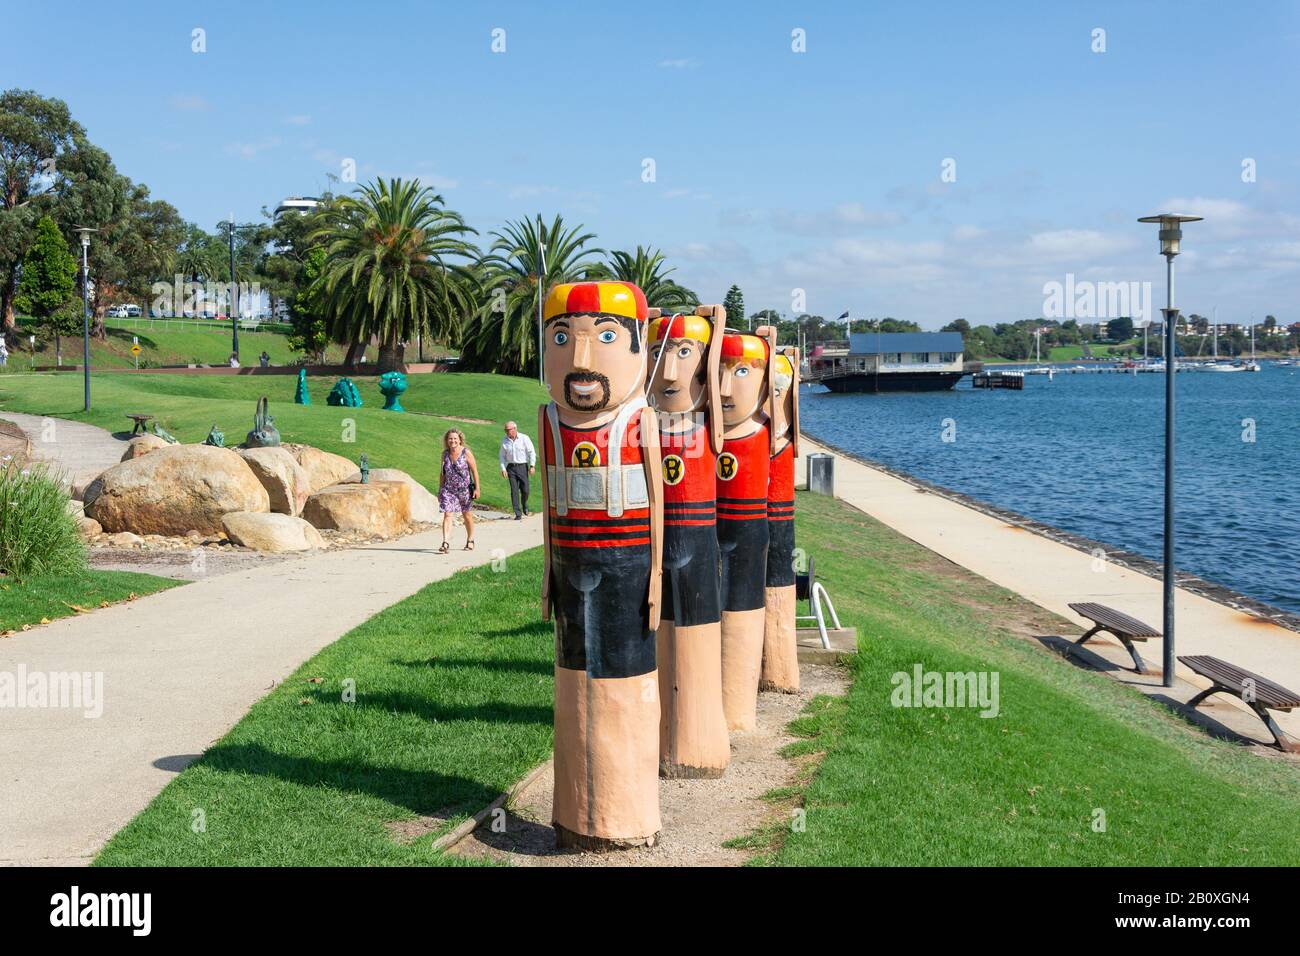 Personaggi lifesaver bollards sul litorale del porto, Geelong, Grant County, Victoria, Australia Foto Stock